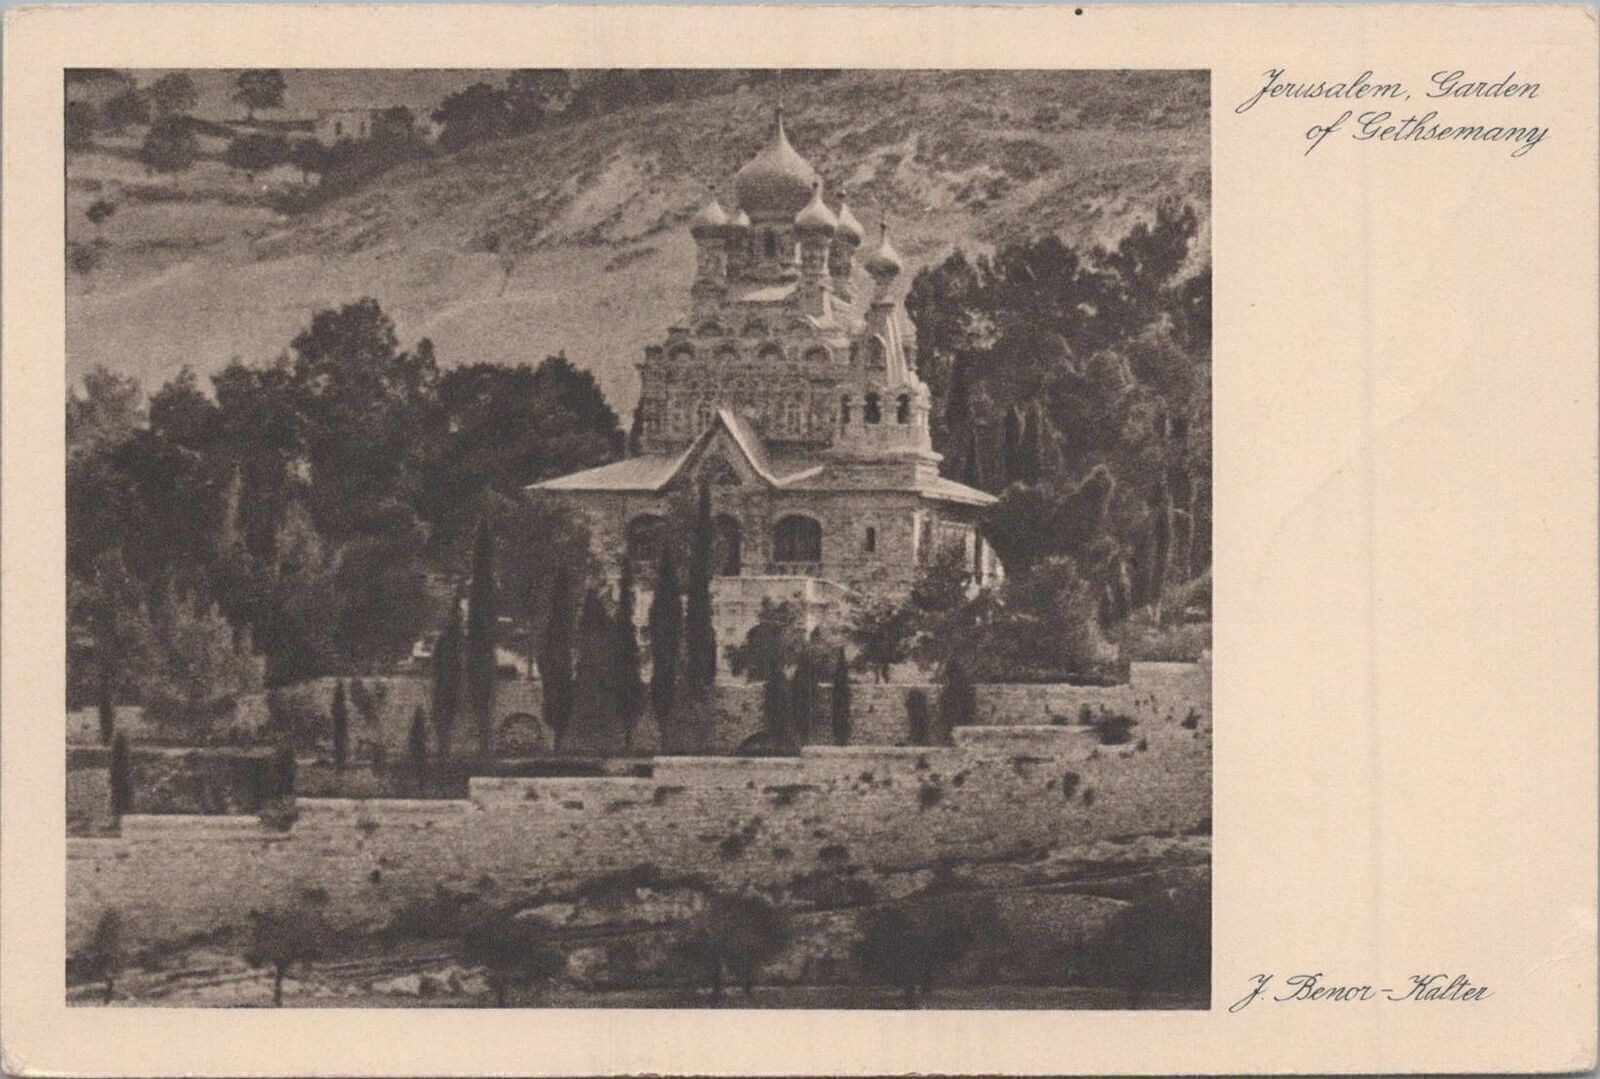 Postcard Jerusalem Garden of Getjsemany  Israel J Benor Kalter